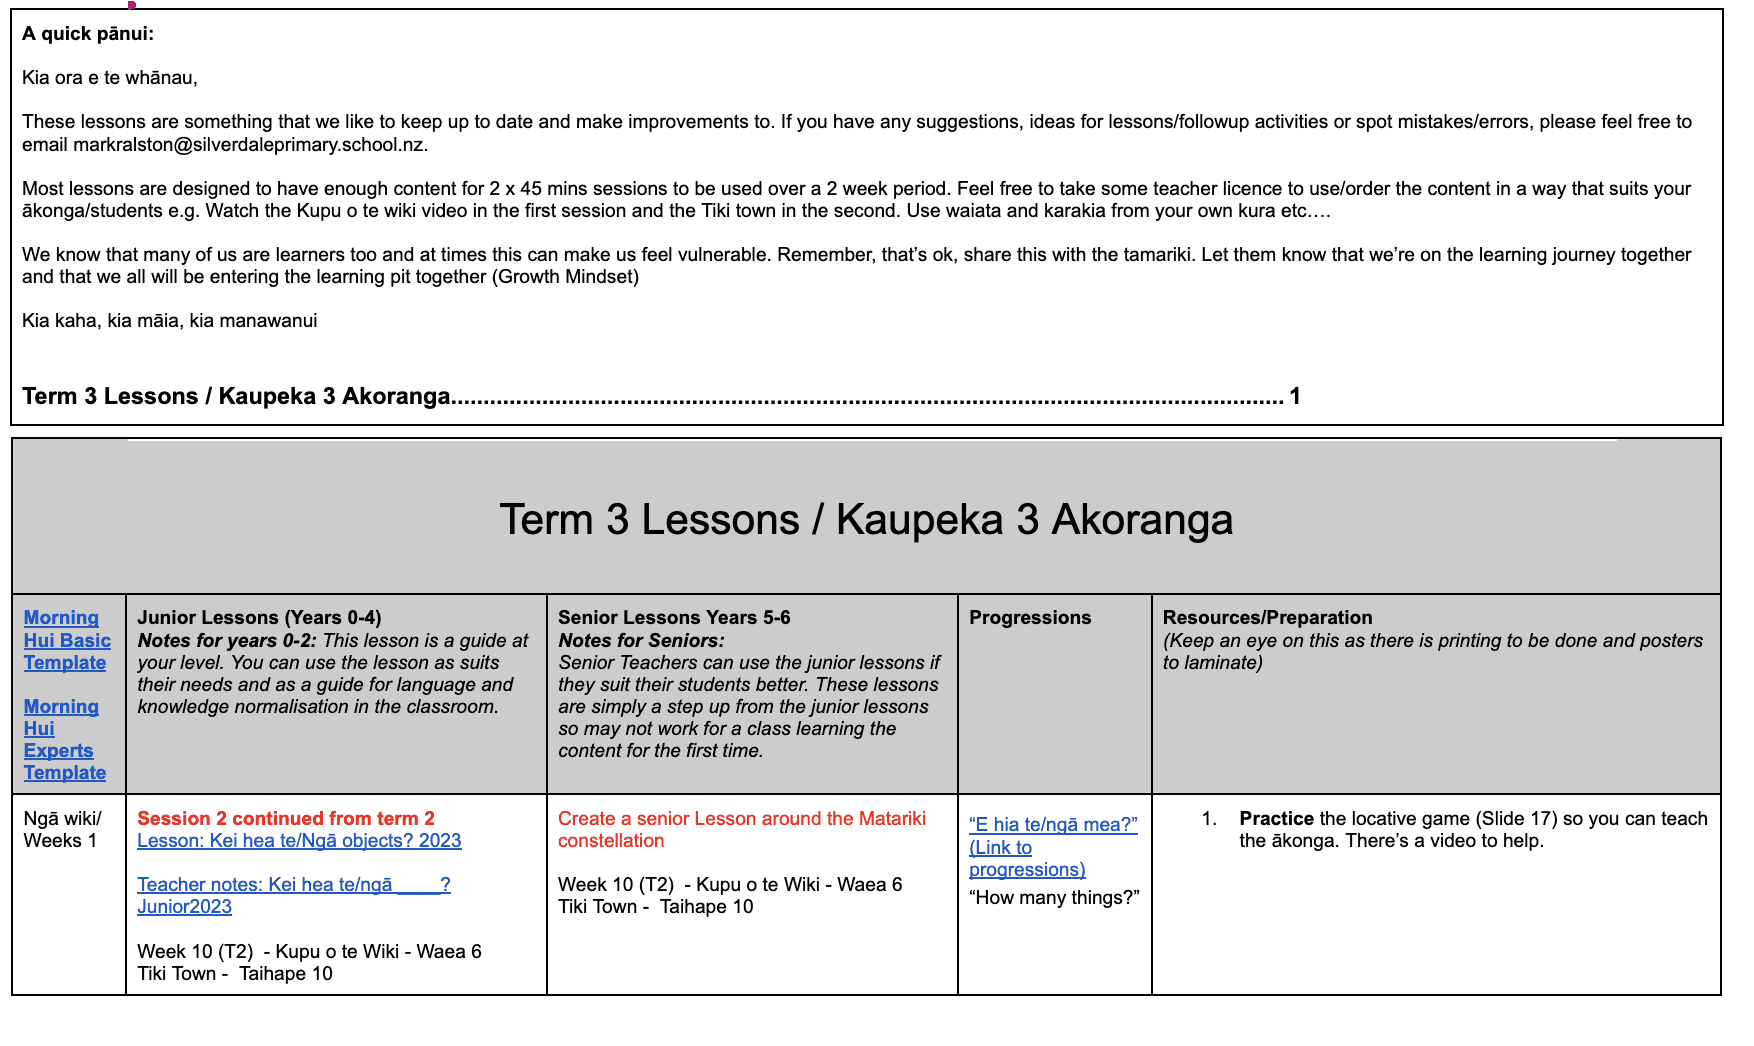 Kāhui Ako Māori Lessons Overview Term 3 2023